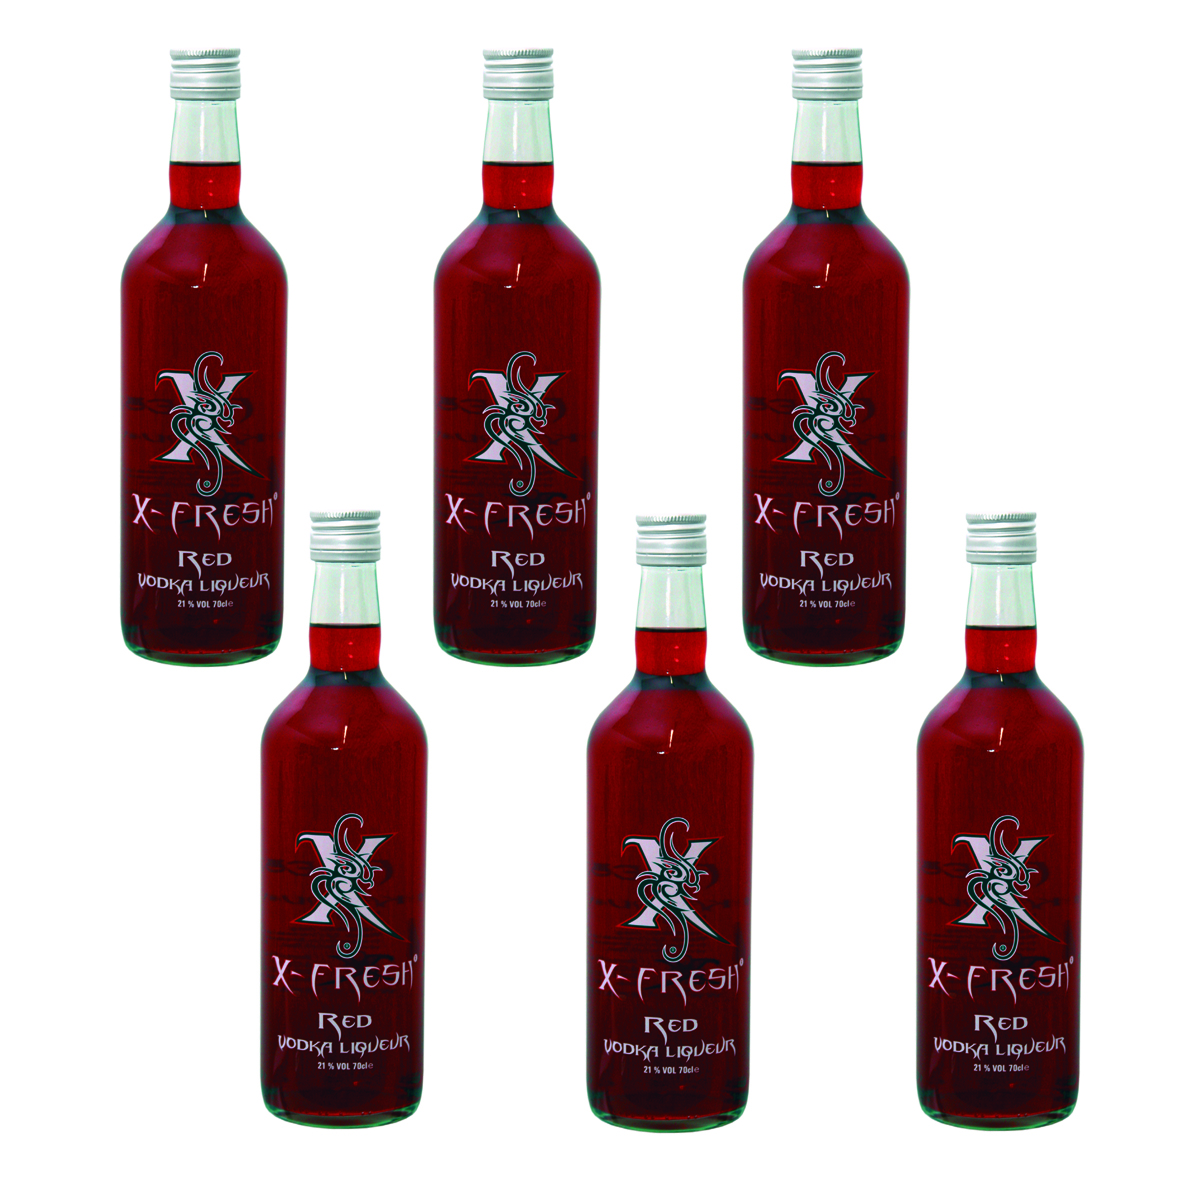 X-Fresh Vodka Red 6 x 0.7 Ltr. (6er-Box) 21 Vol. / Verkauf nur ab 18 Jahren / Kein Export 